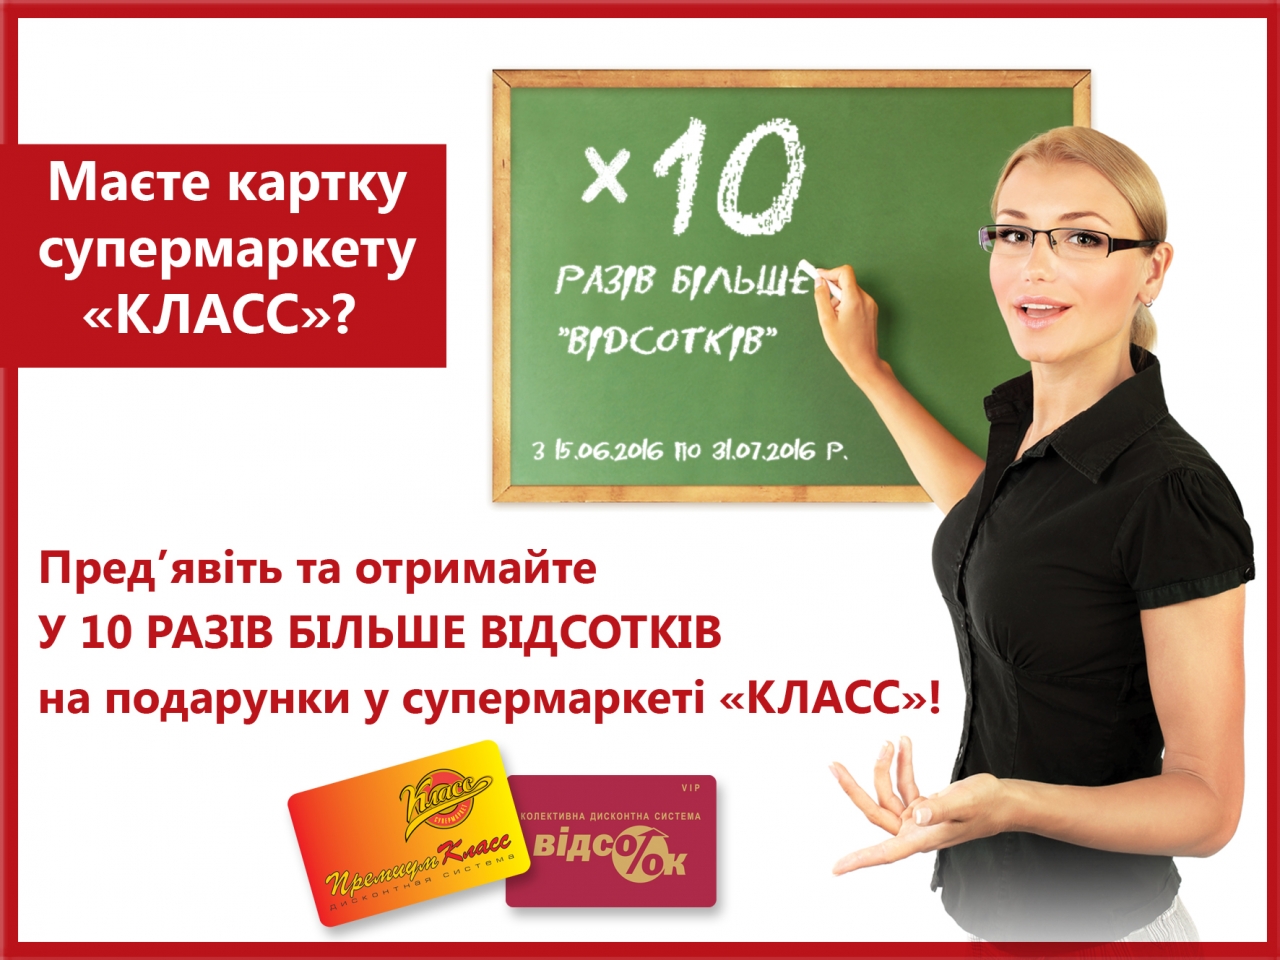 Харків: у 10 разів більше економії для клієнтів супермаркетів «Класс»!